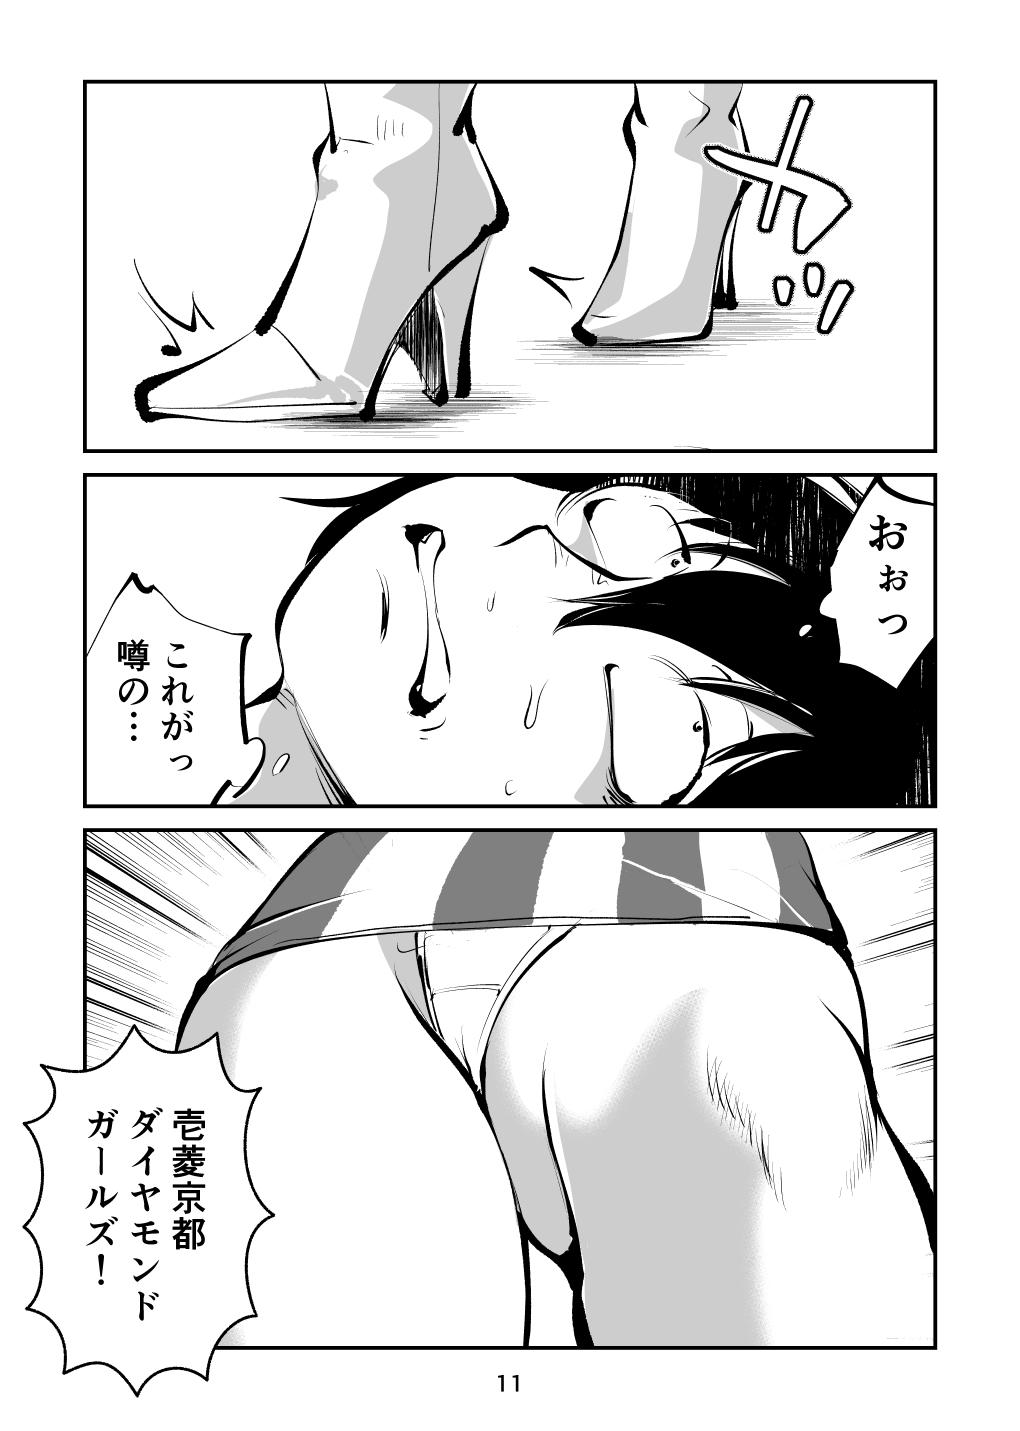 Banheiro Kinkeri Cheer Girl VS Tosatsuma Shakai Hito Cheer Girl-hen - Original Amador - Page 11